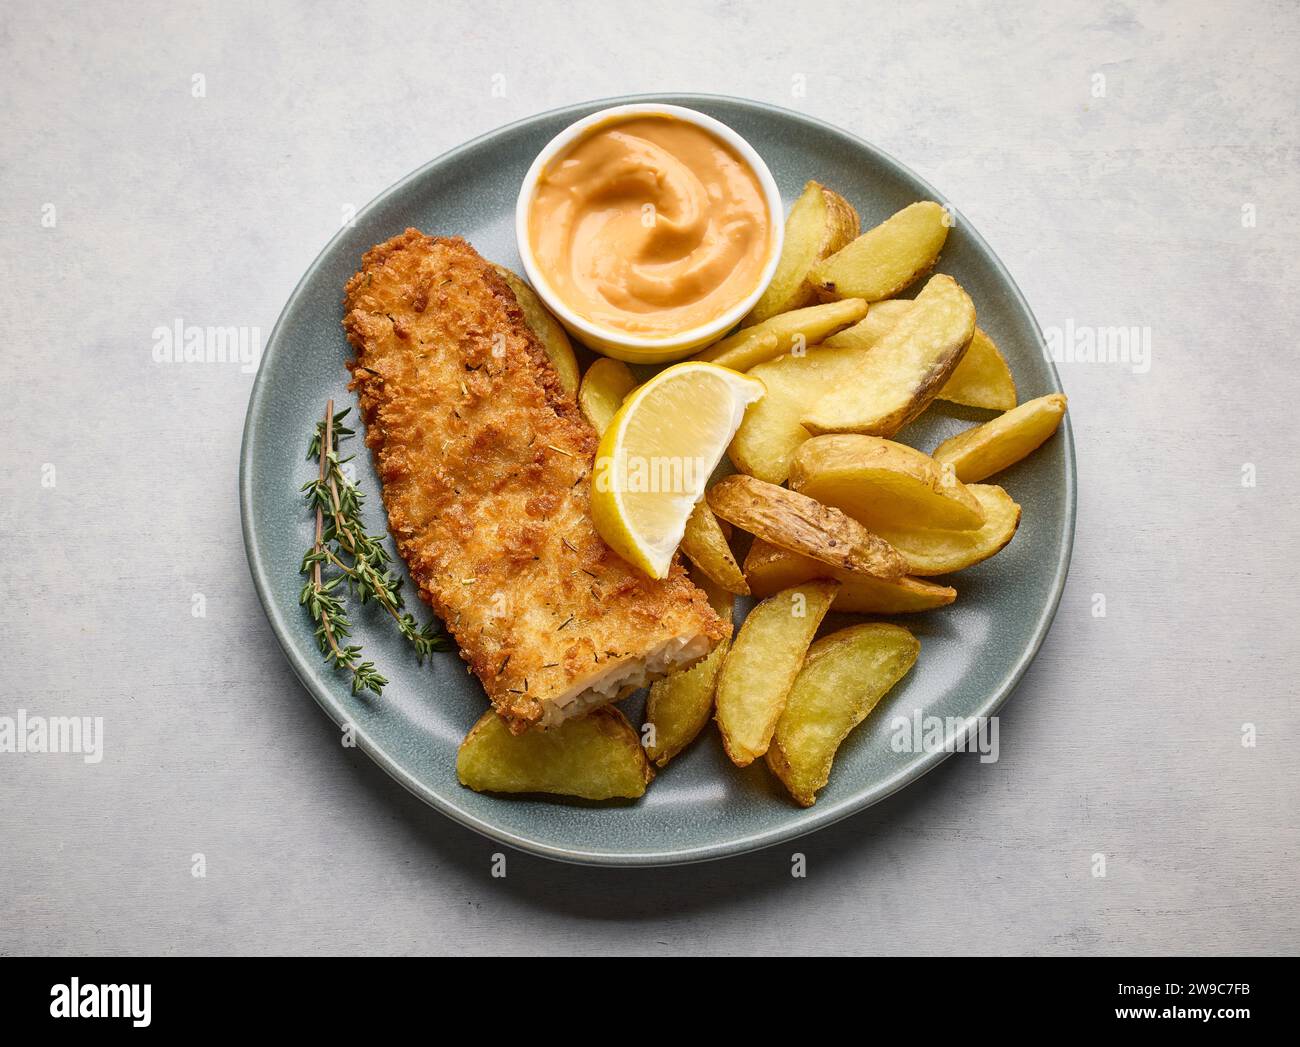 assiette de fish and chips, filet de poisson pané et tranches de pommes de terre frites sur la table de cuisine lumineuse, vue de dessus Banque D'Images